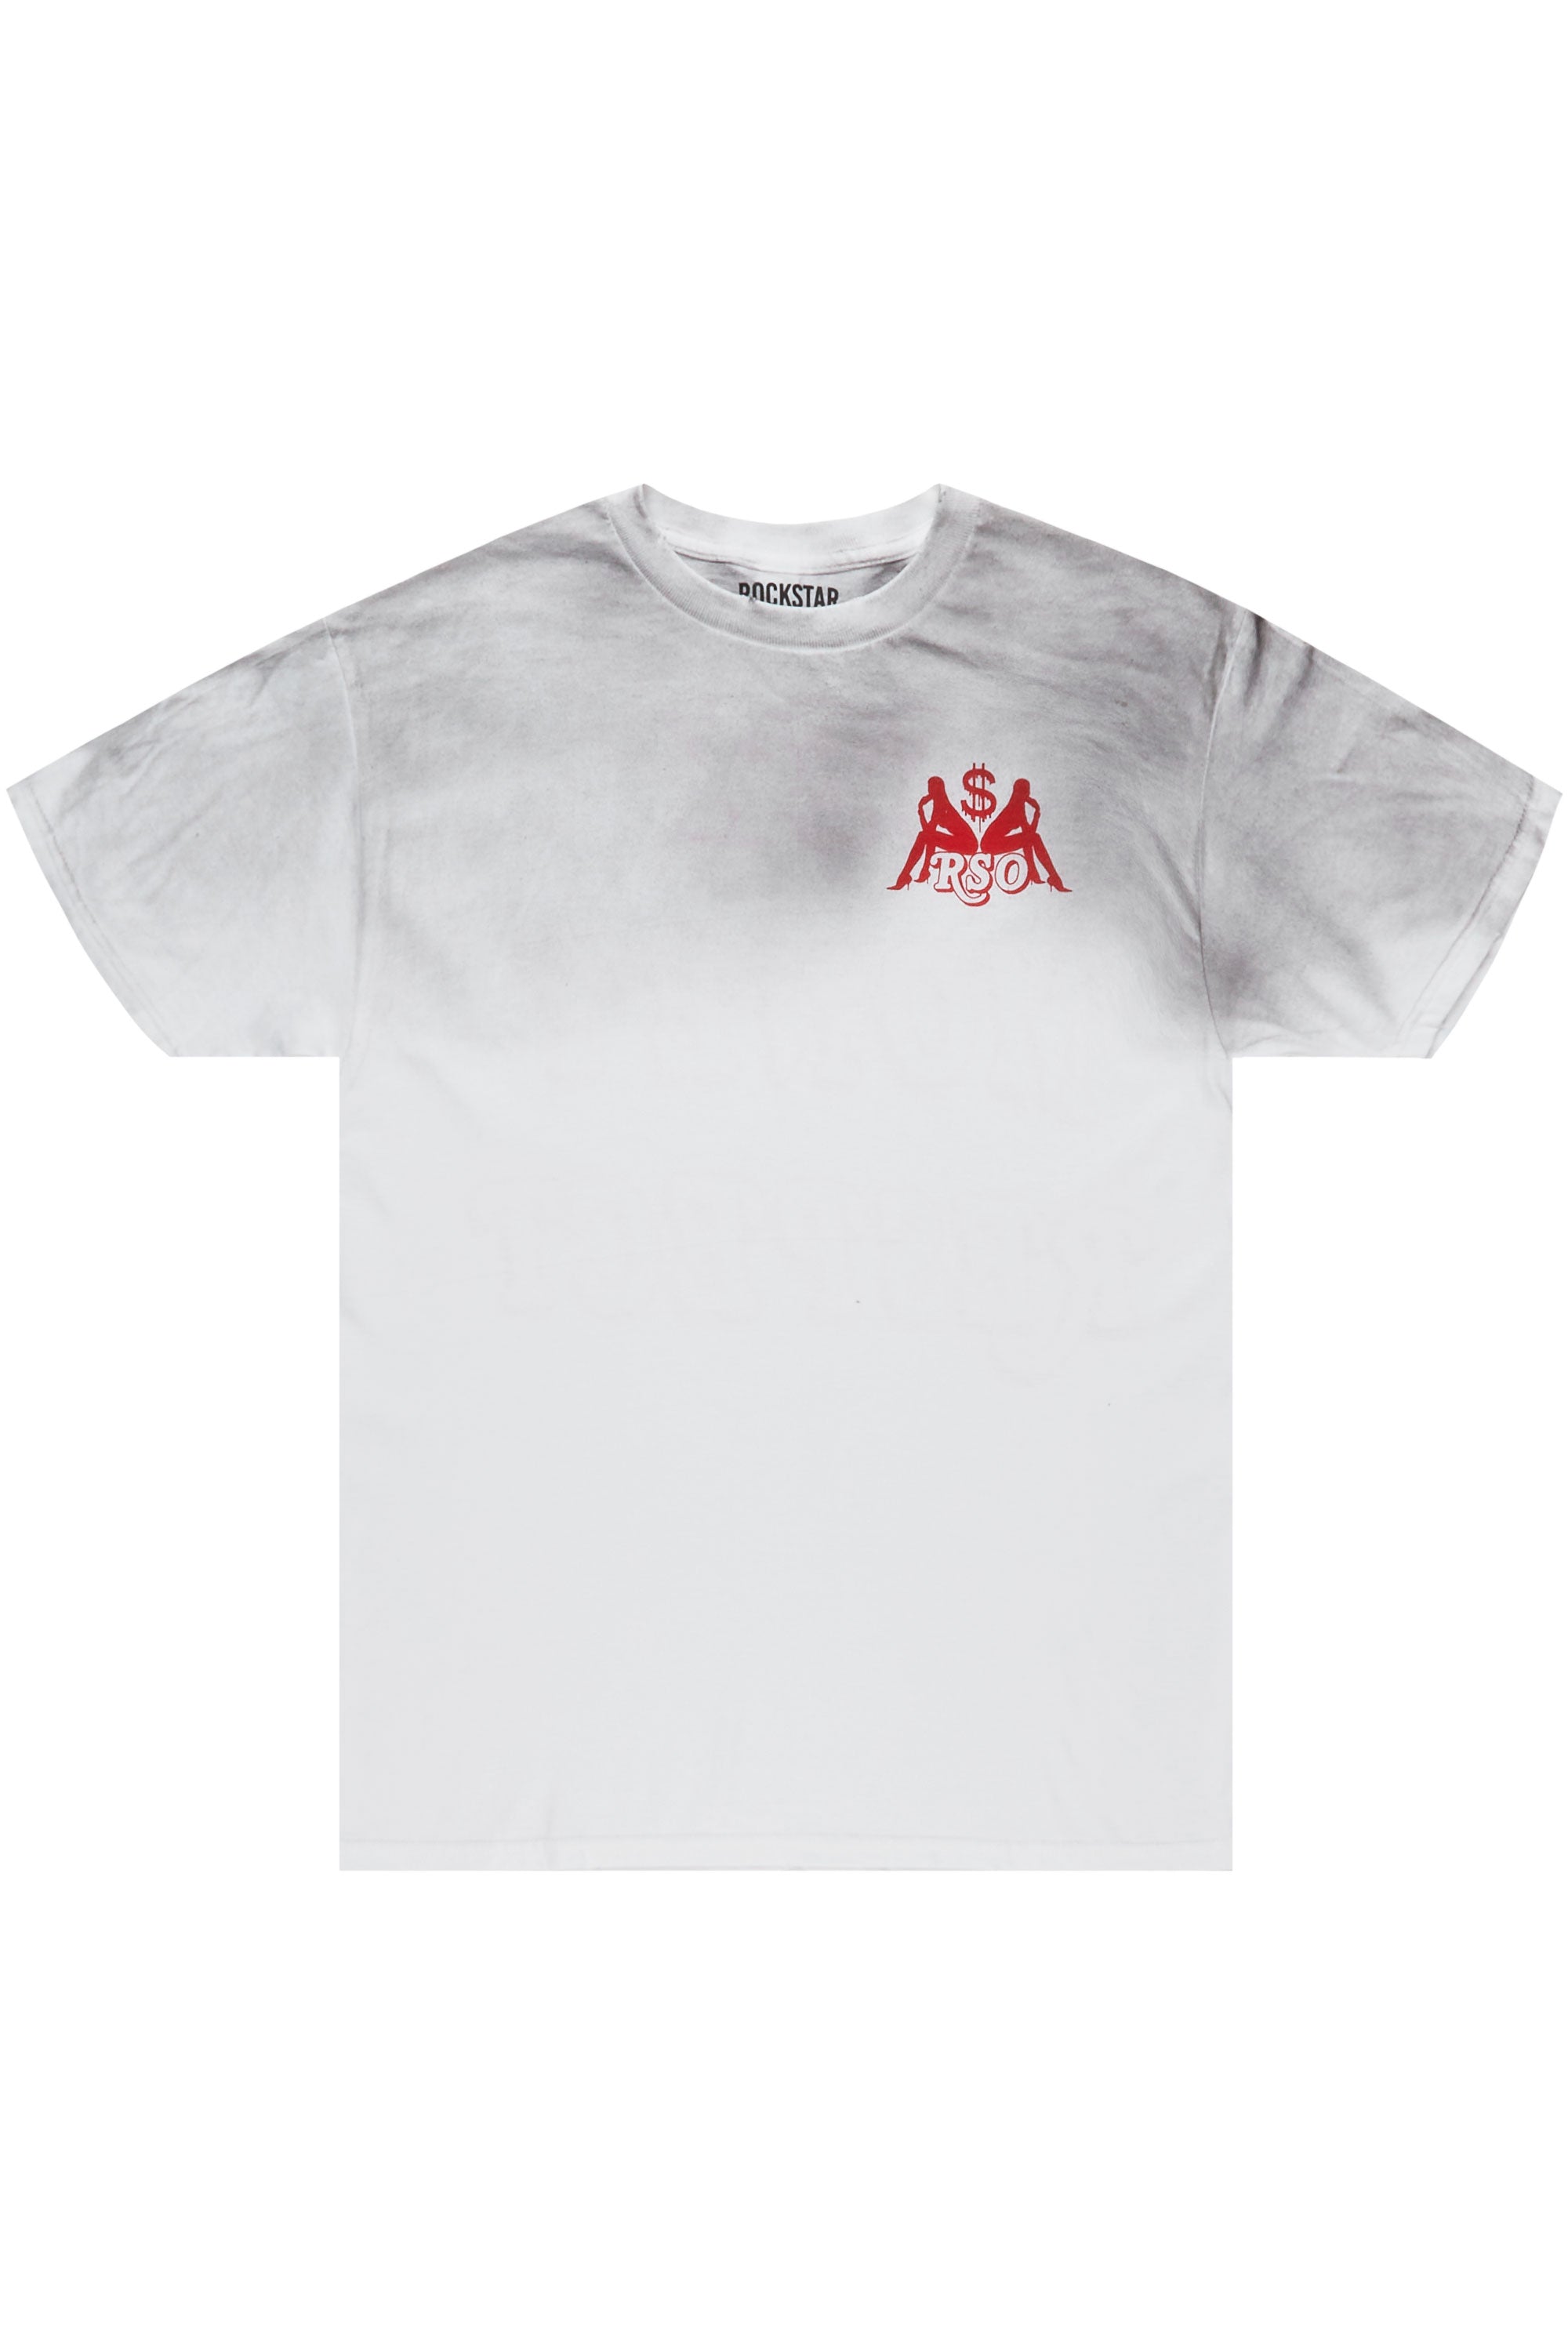 Seedee White Graphic T-Shirt